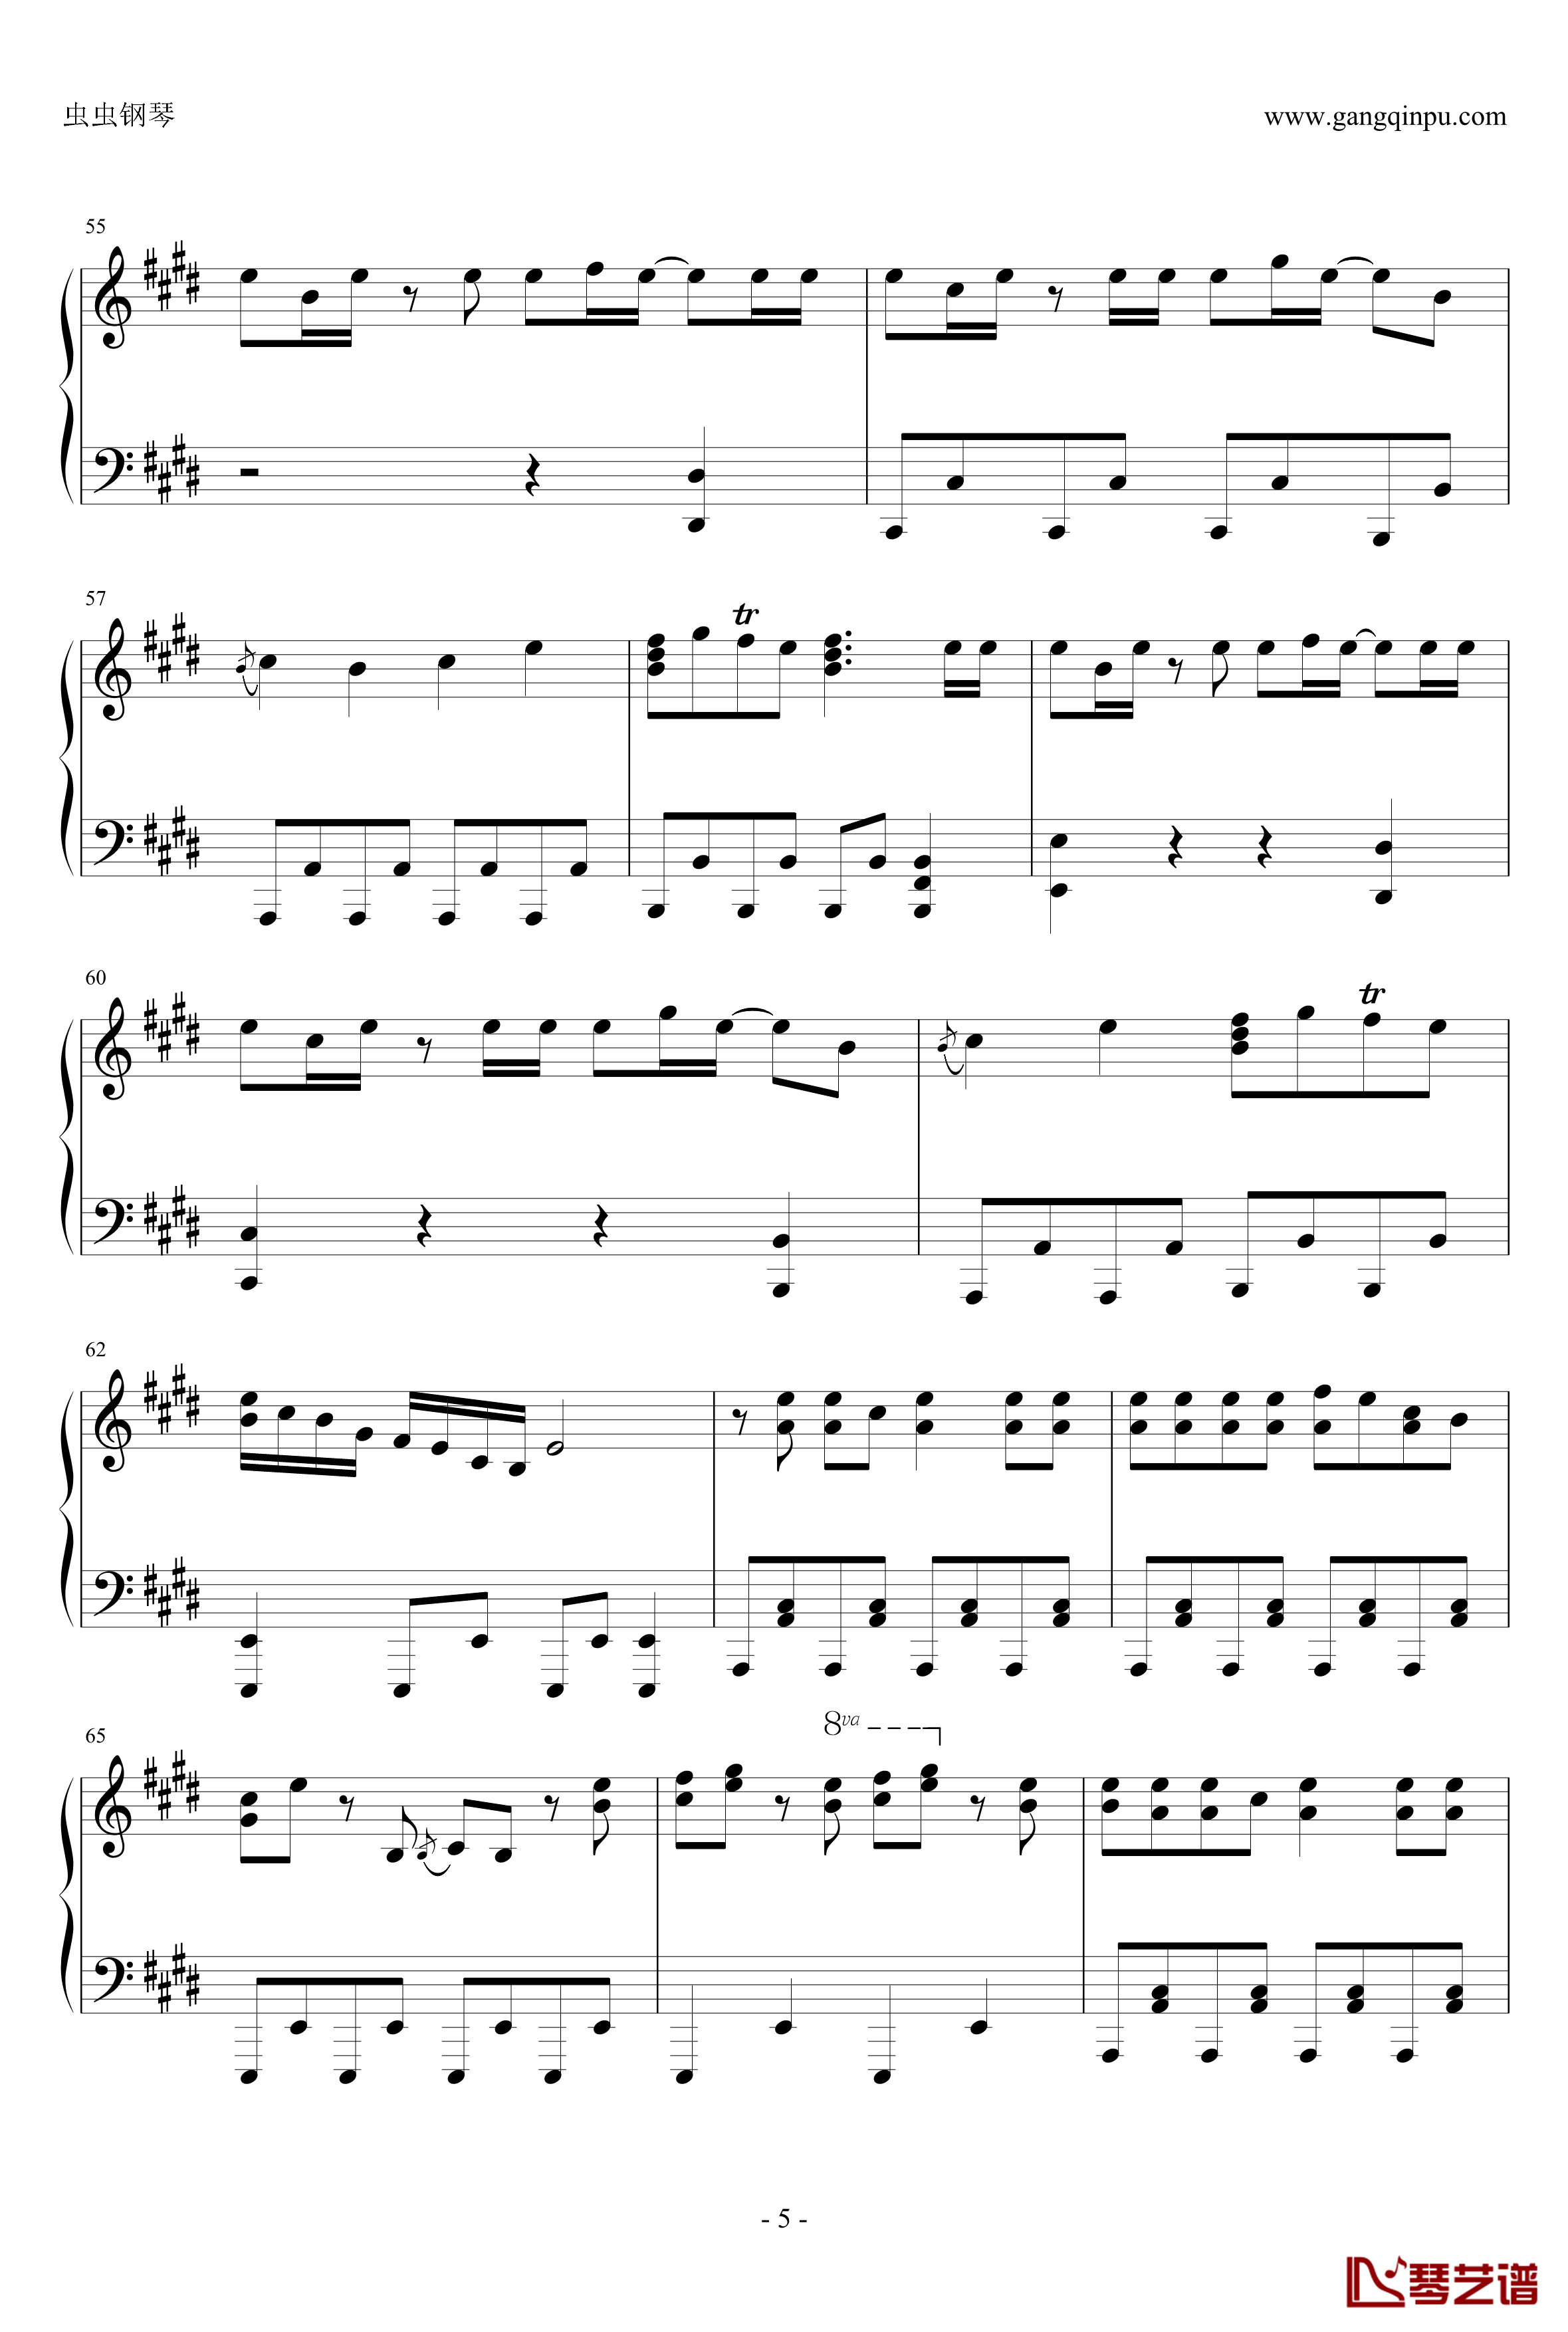 白金迪斯科钢琴谱-伪物语5